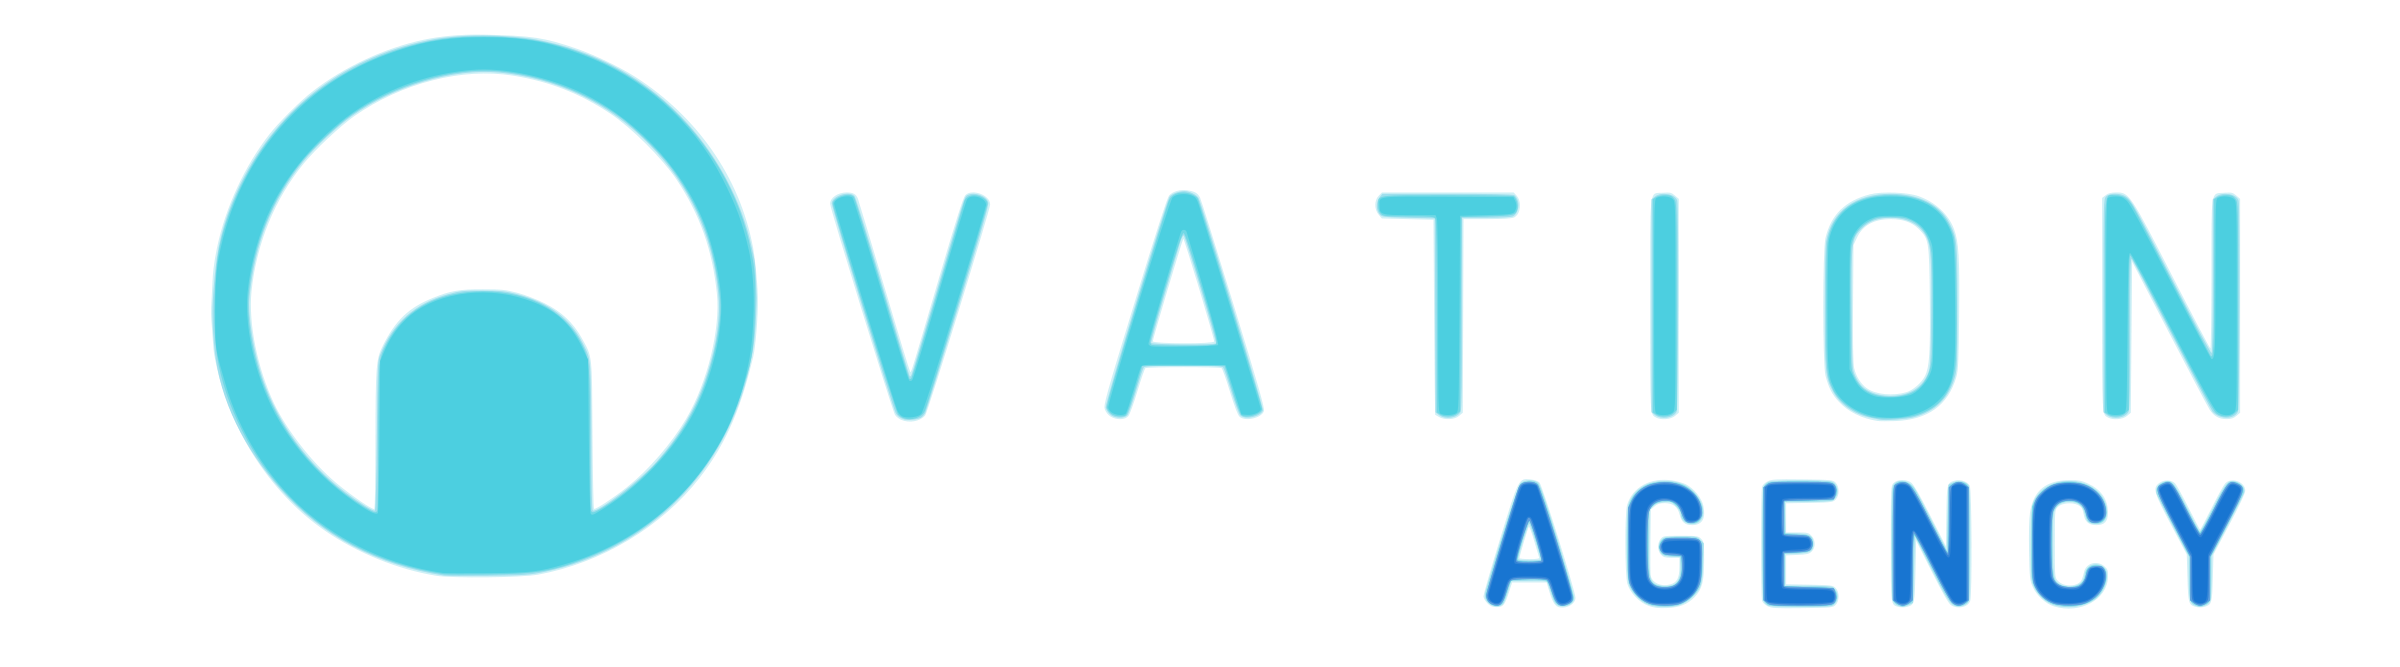 Ovation Agency Logo - Cythral Portfolio